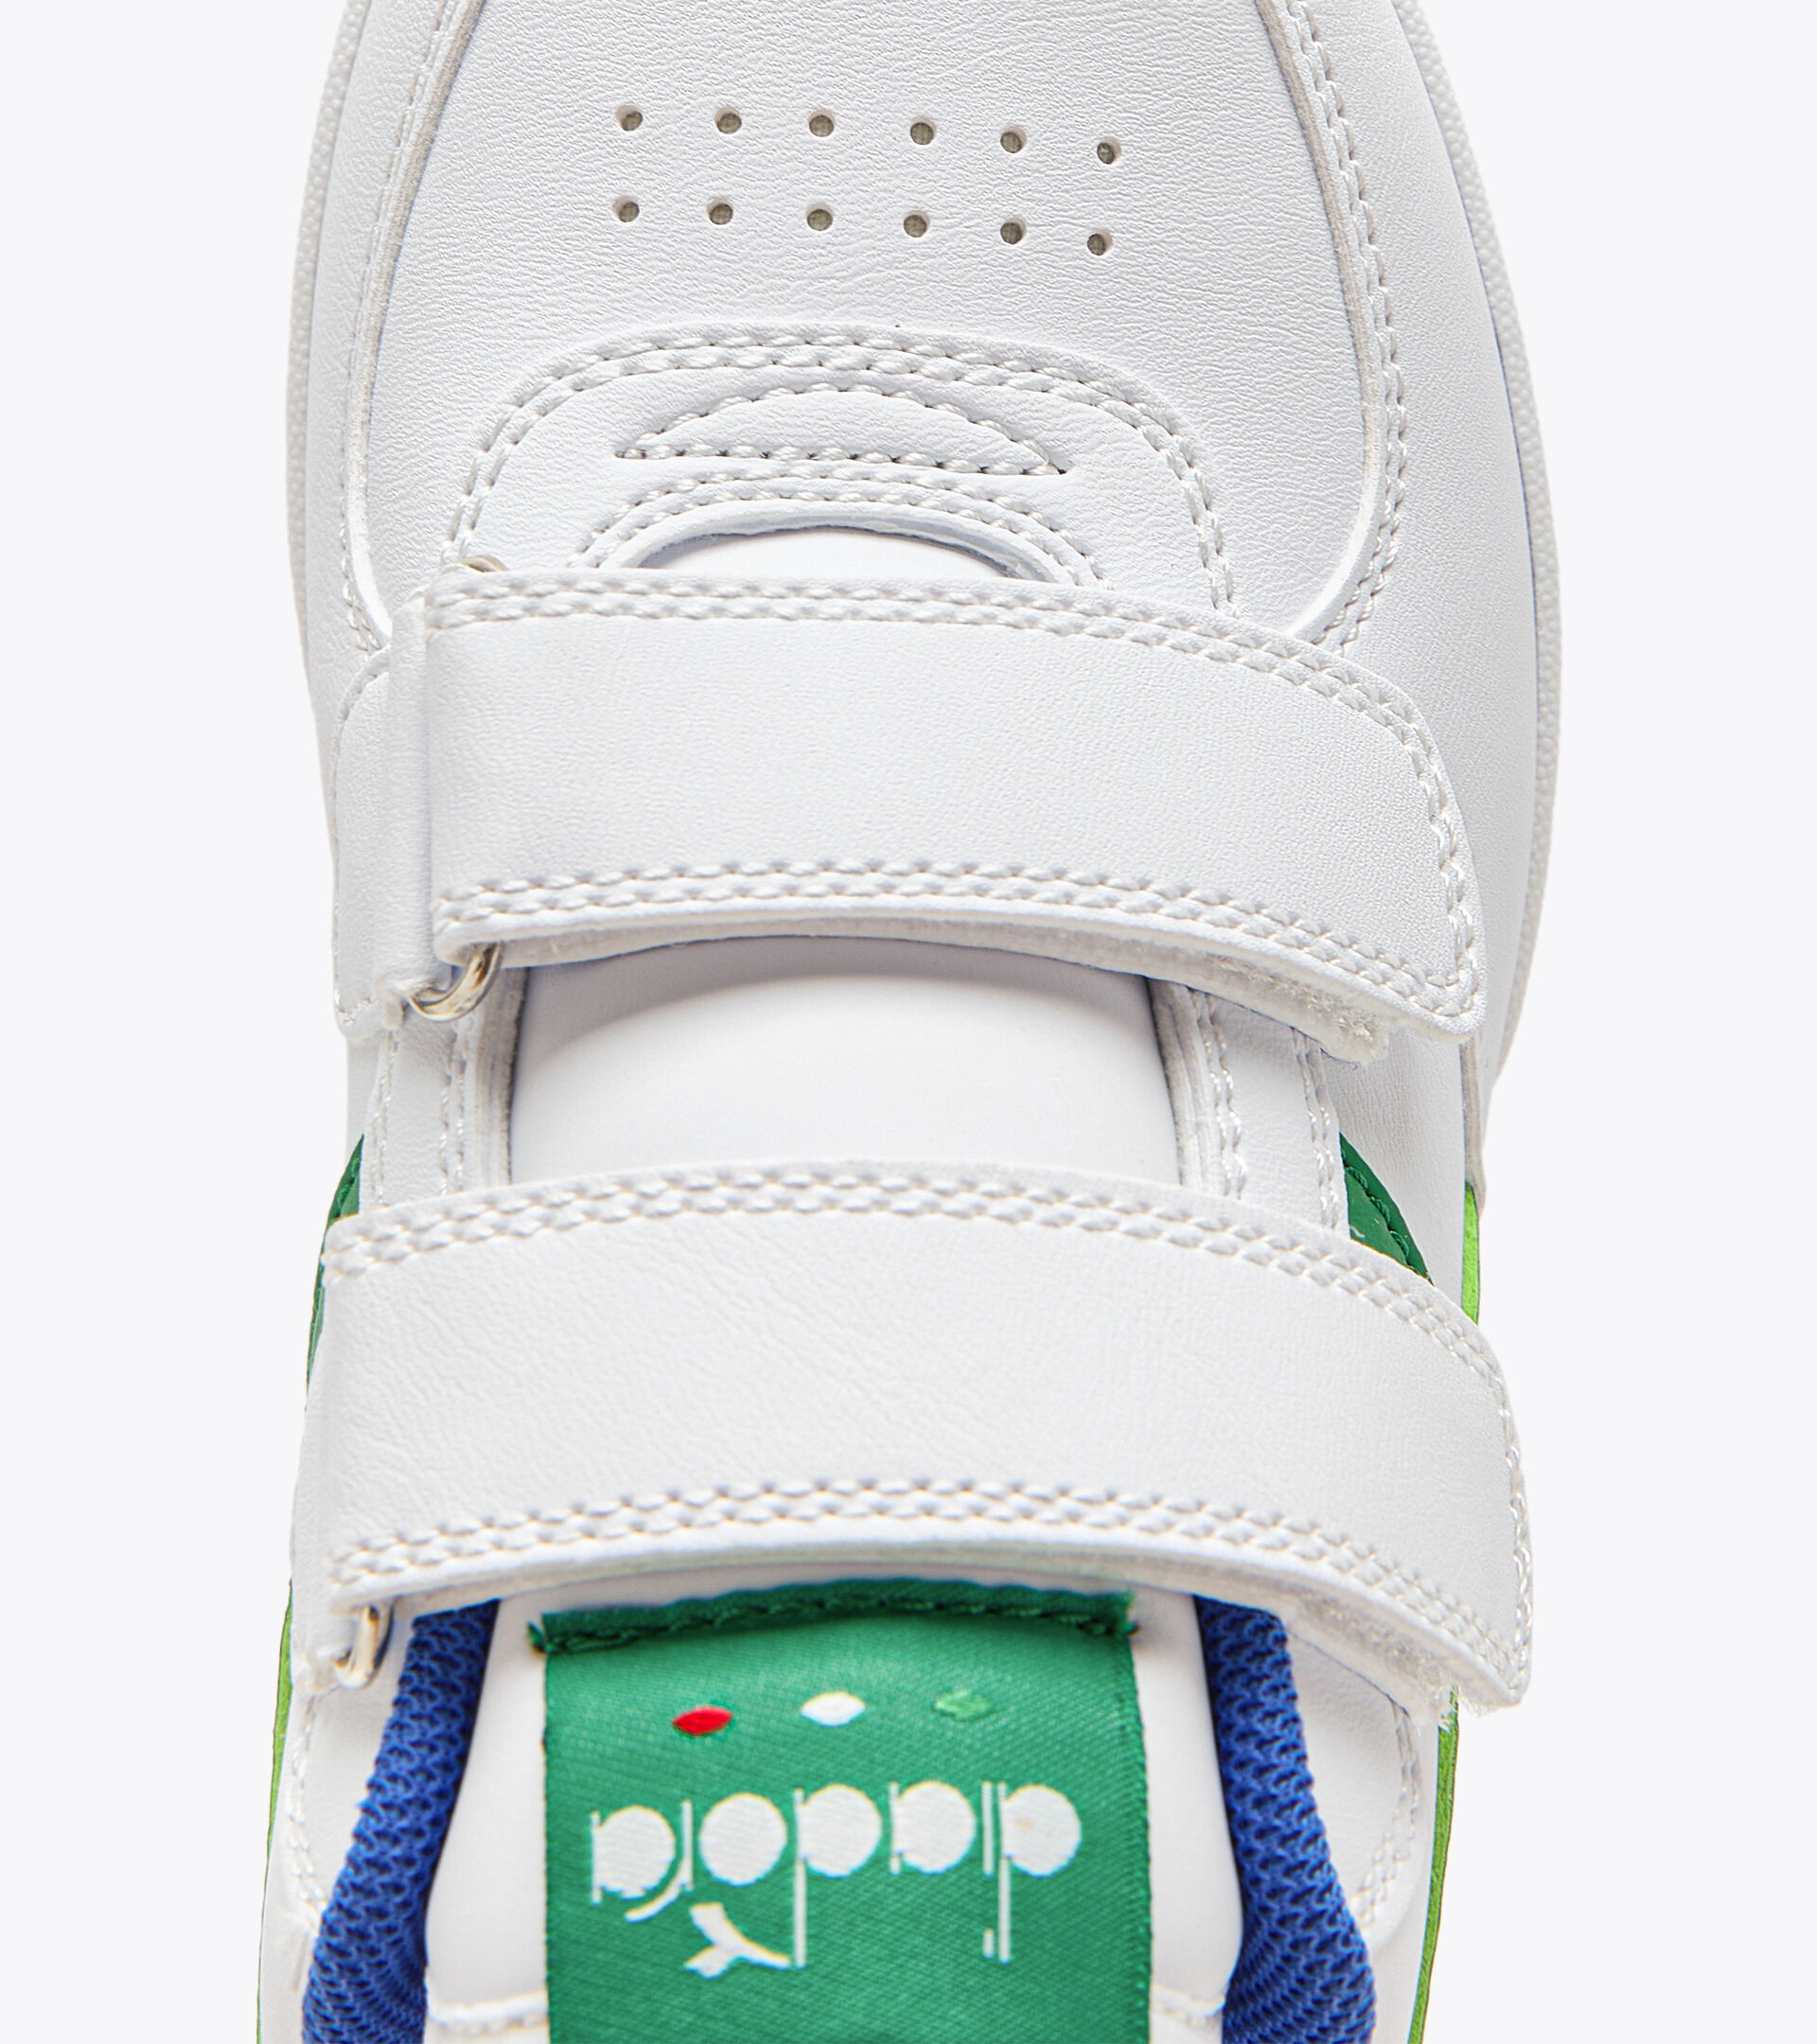 Zapatillas Tenis para niños - Diadora Tienda Online